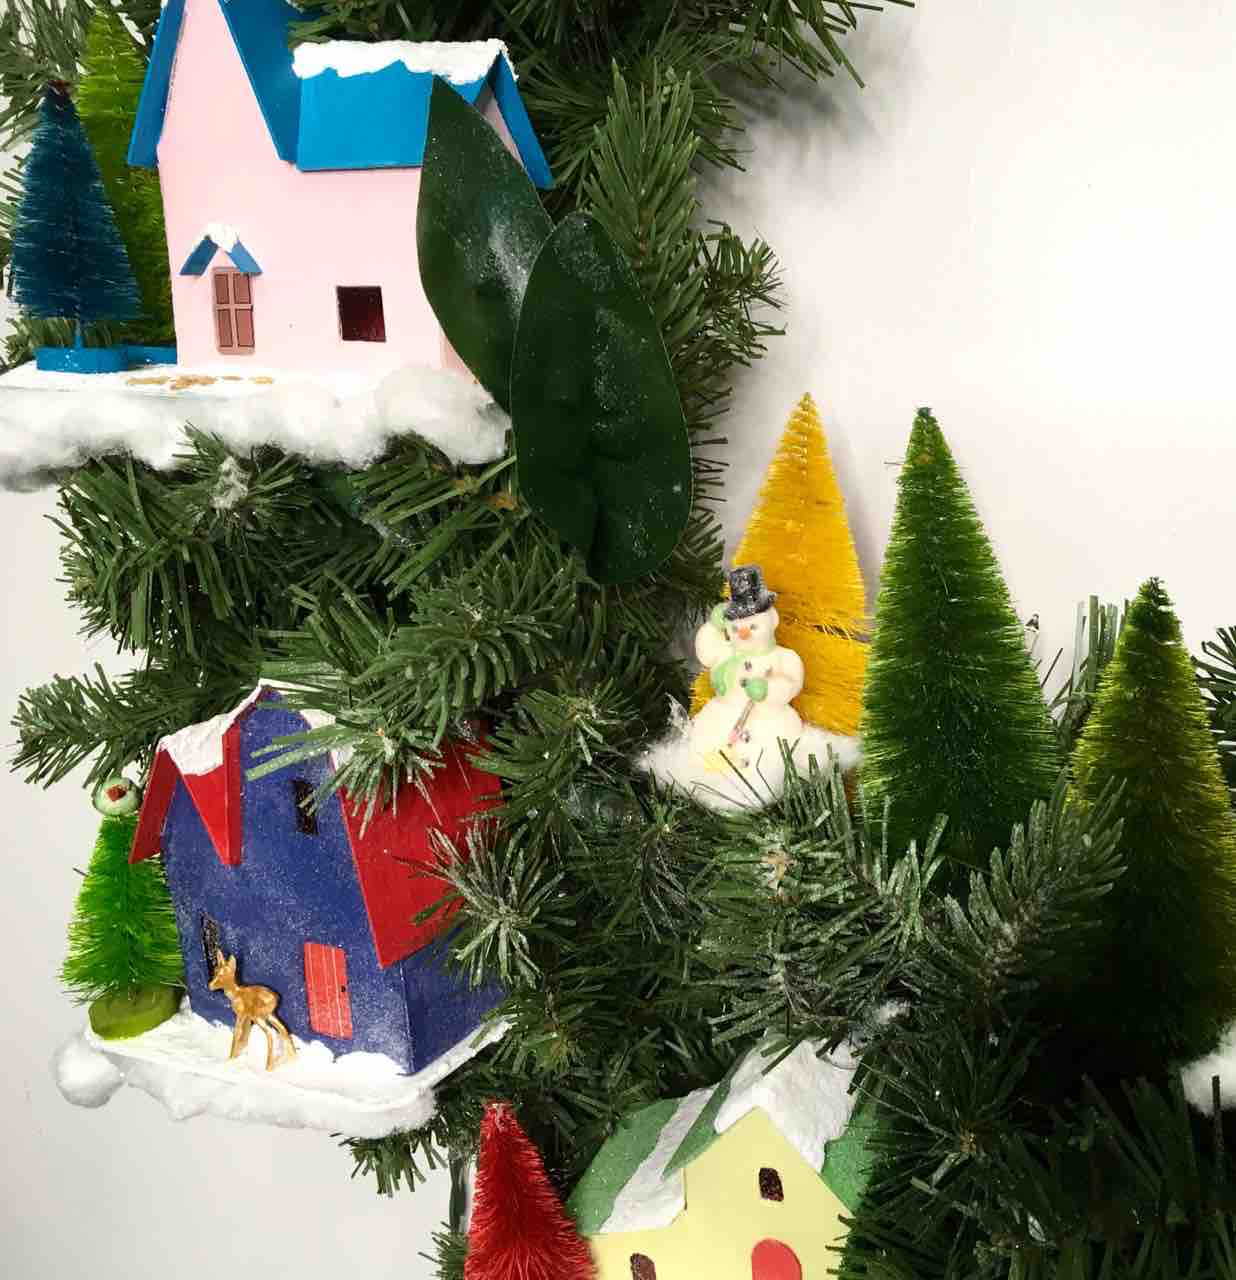 Salvaged Snowman on Winter Village Christmas wreath among bottlebrush trees